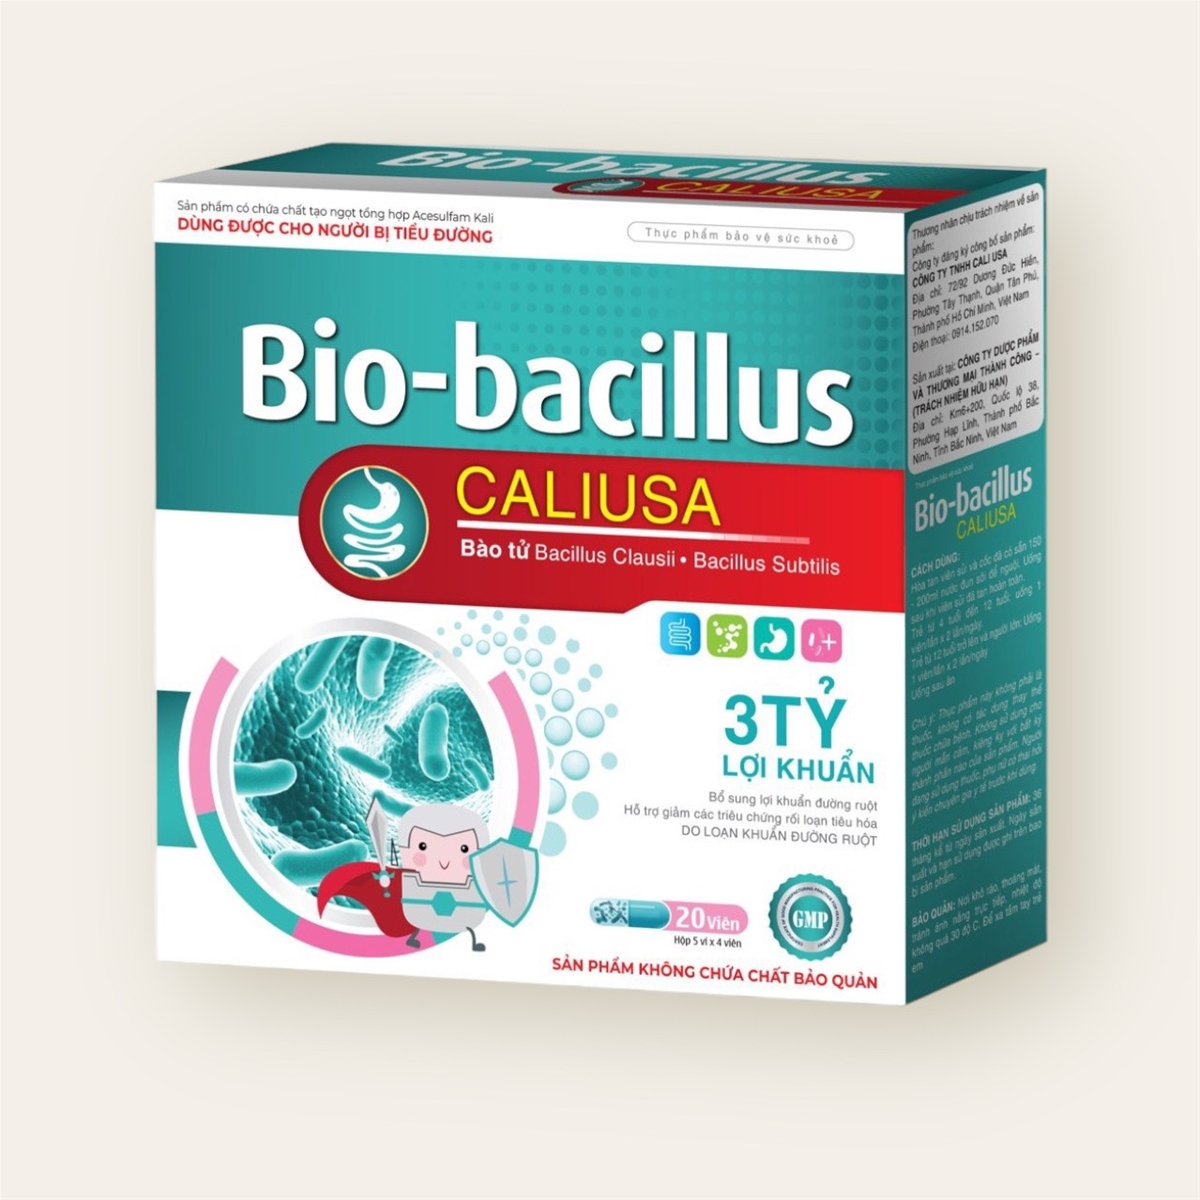 Thực phẩm bảo vệ sức khỏe Bio-bacillus CALIUSA hỗ trợ giảm các triệu chứng rối loạn tiêu hóa - 3